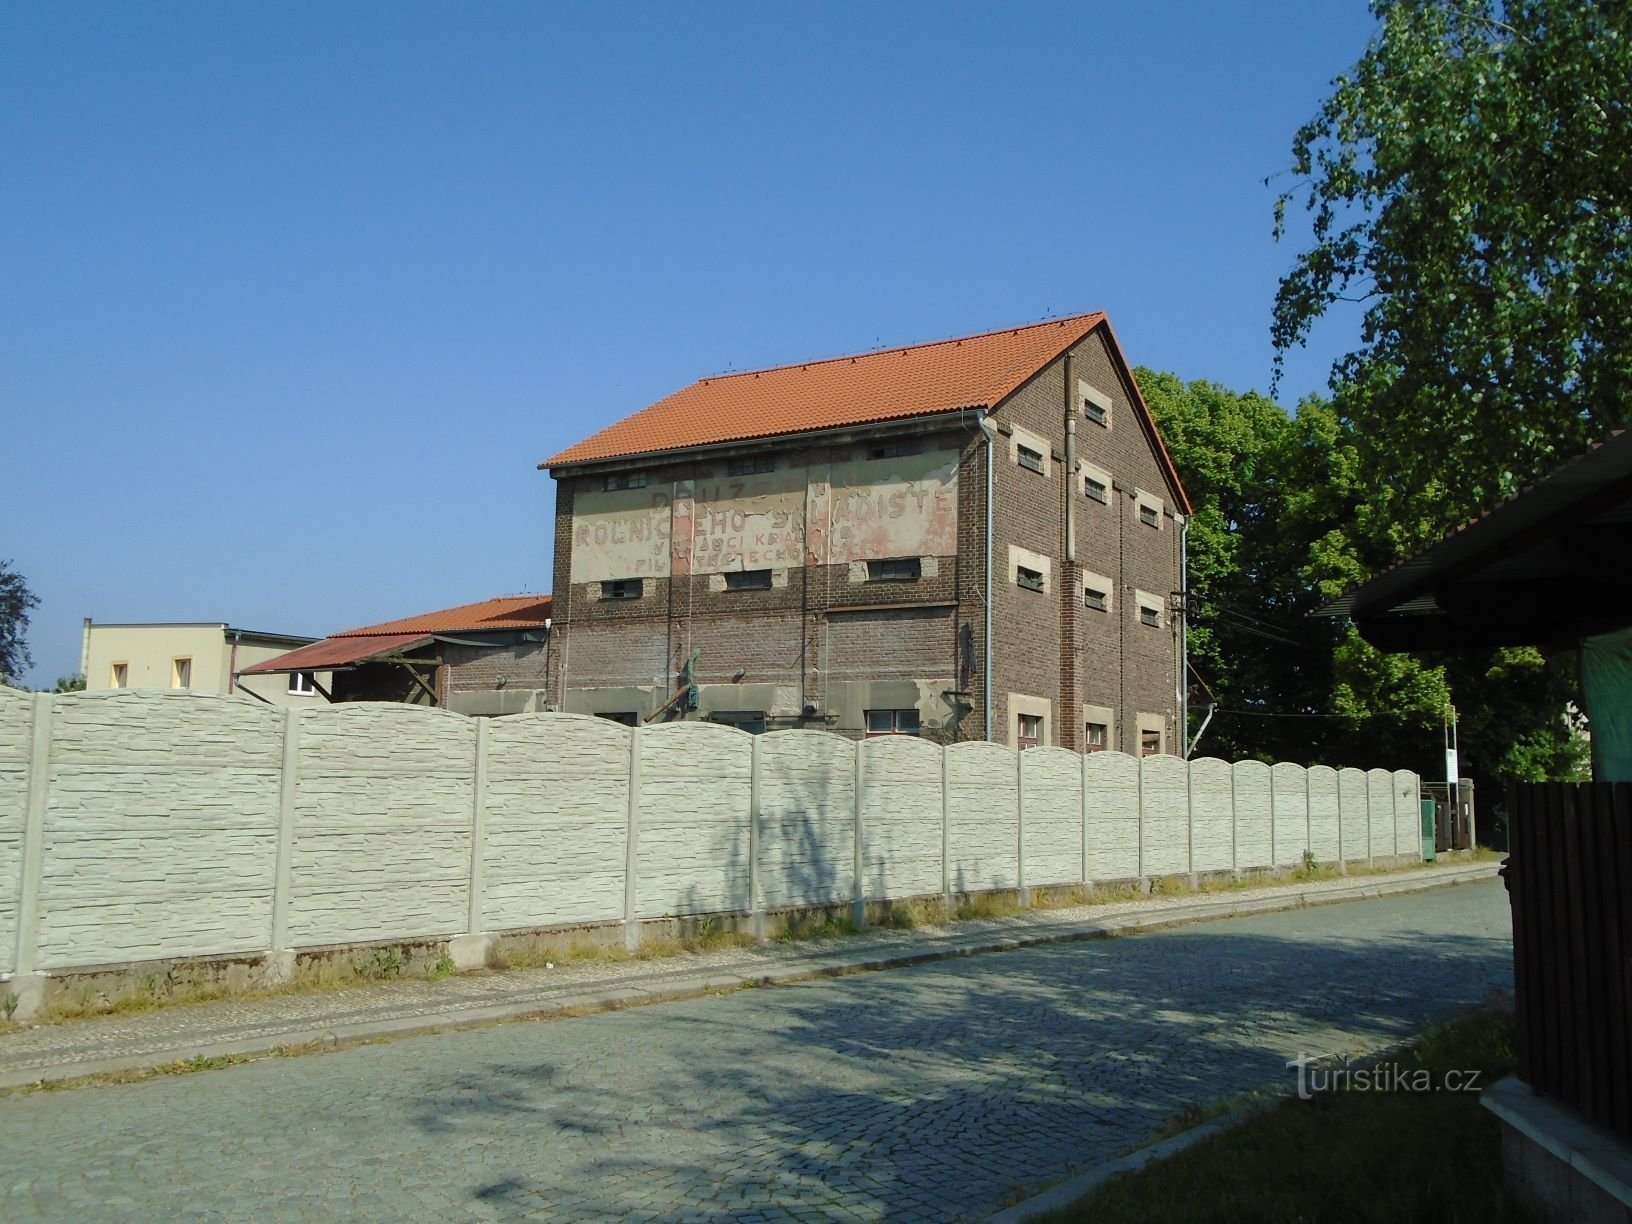 Tòa nhà của nhà kho nông trại cũ (Třebechovice pod Orebem, ngày 12.5.2018 tháng XNUMX năm XNUMX)